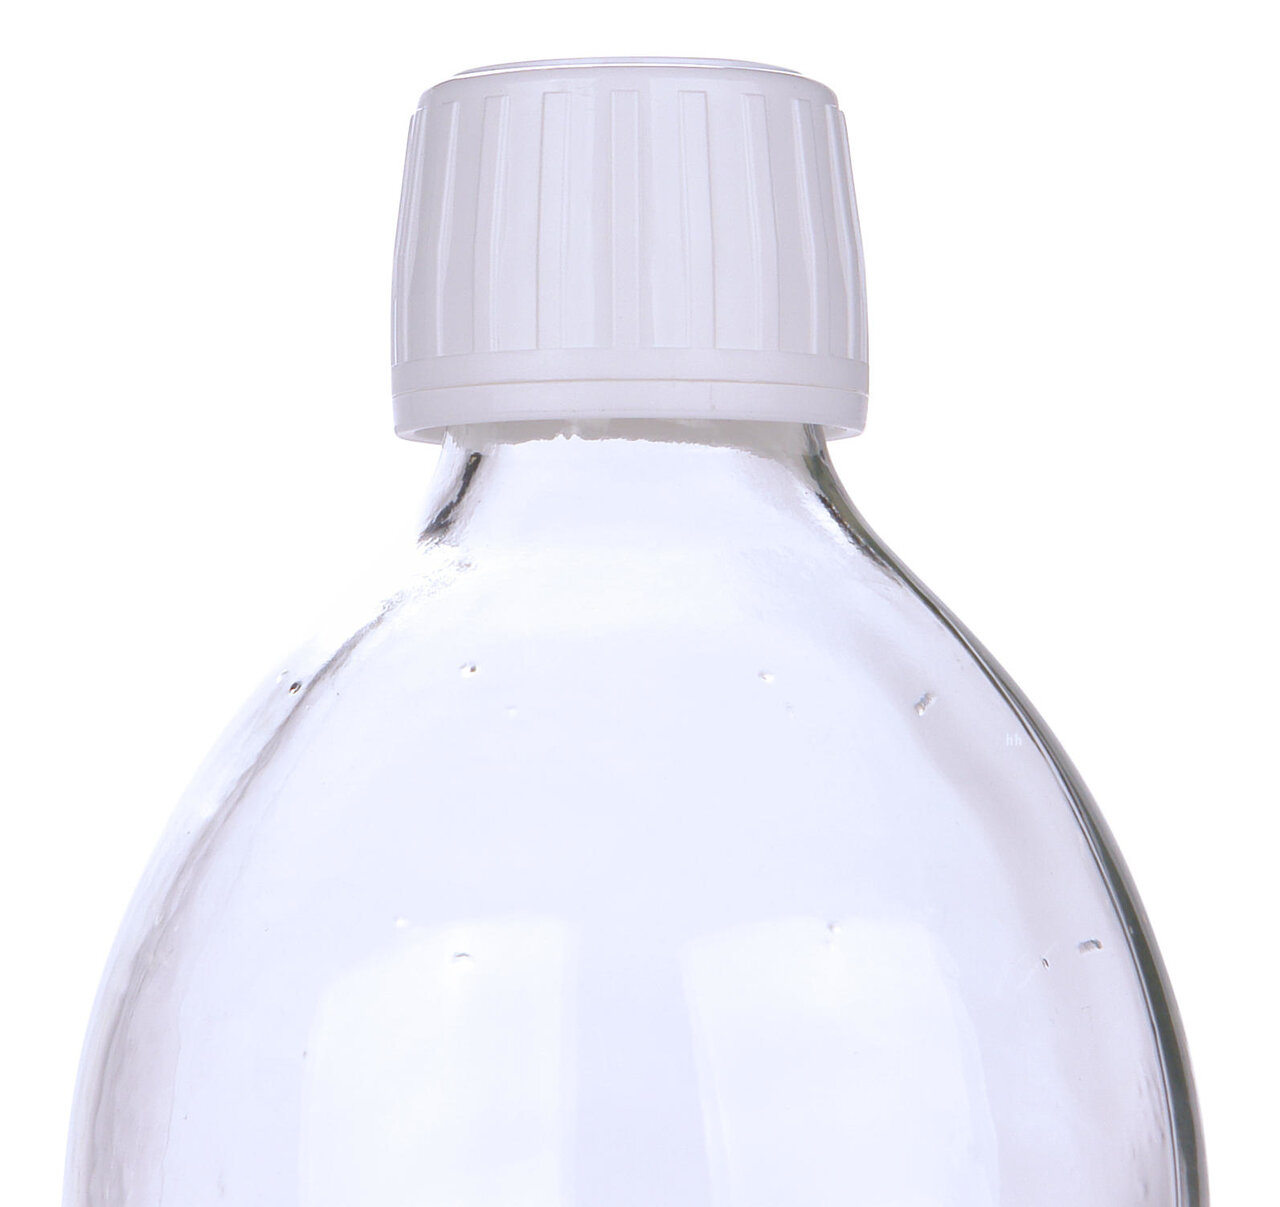 Astra Dop / Draaidop voor GLAZEN fles Wit DIN 28